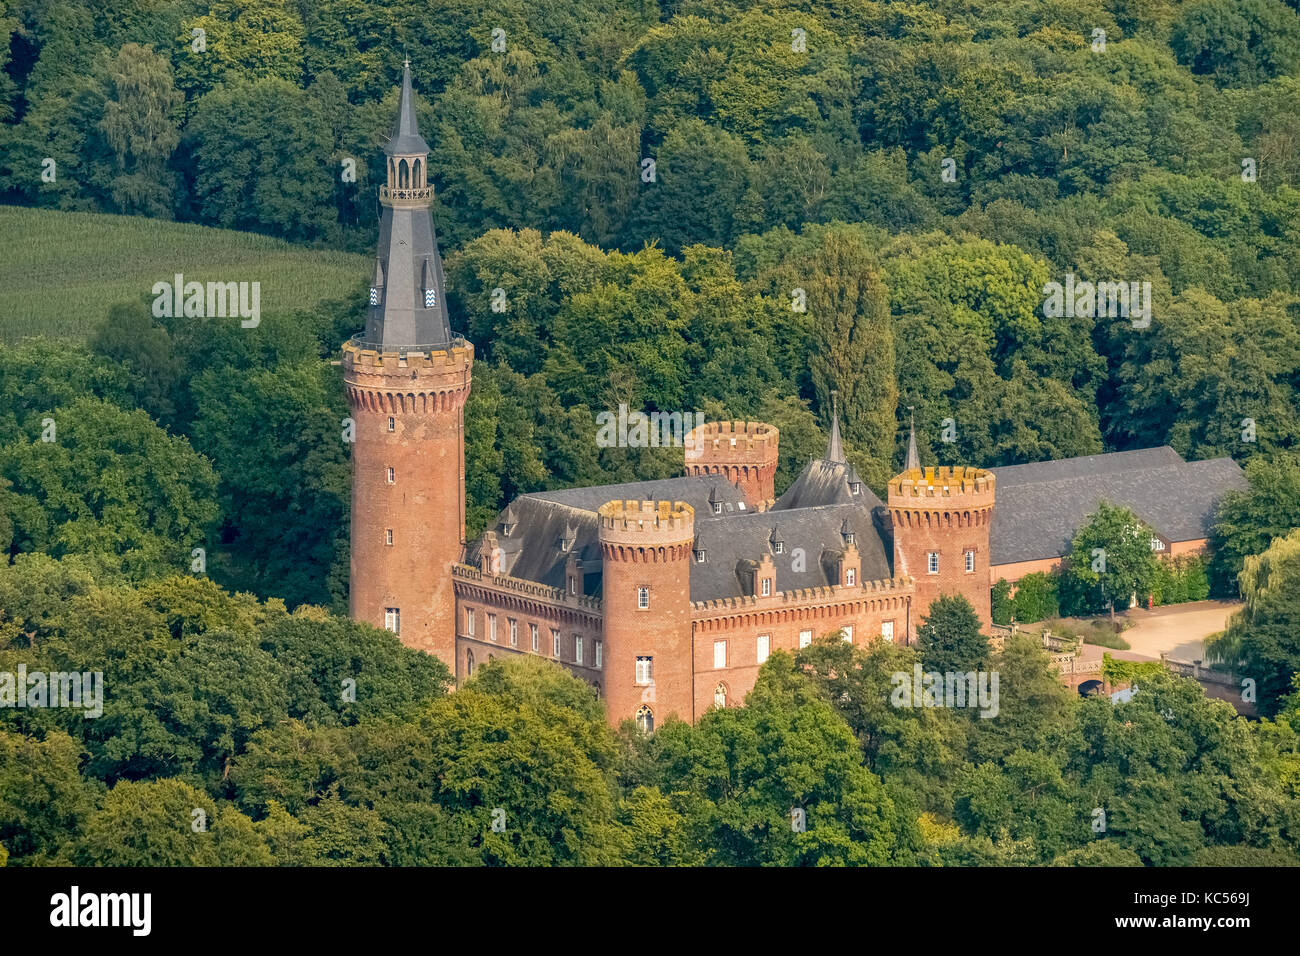 Museo del castello di Moyland, castello con fossato, edificio neogotico, parco del castello, Bedburg-Hau, basso Reno, Renania settentrionale-Vestfalia Foto Stock